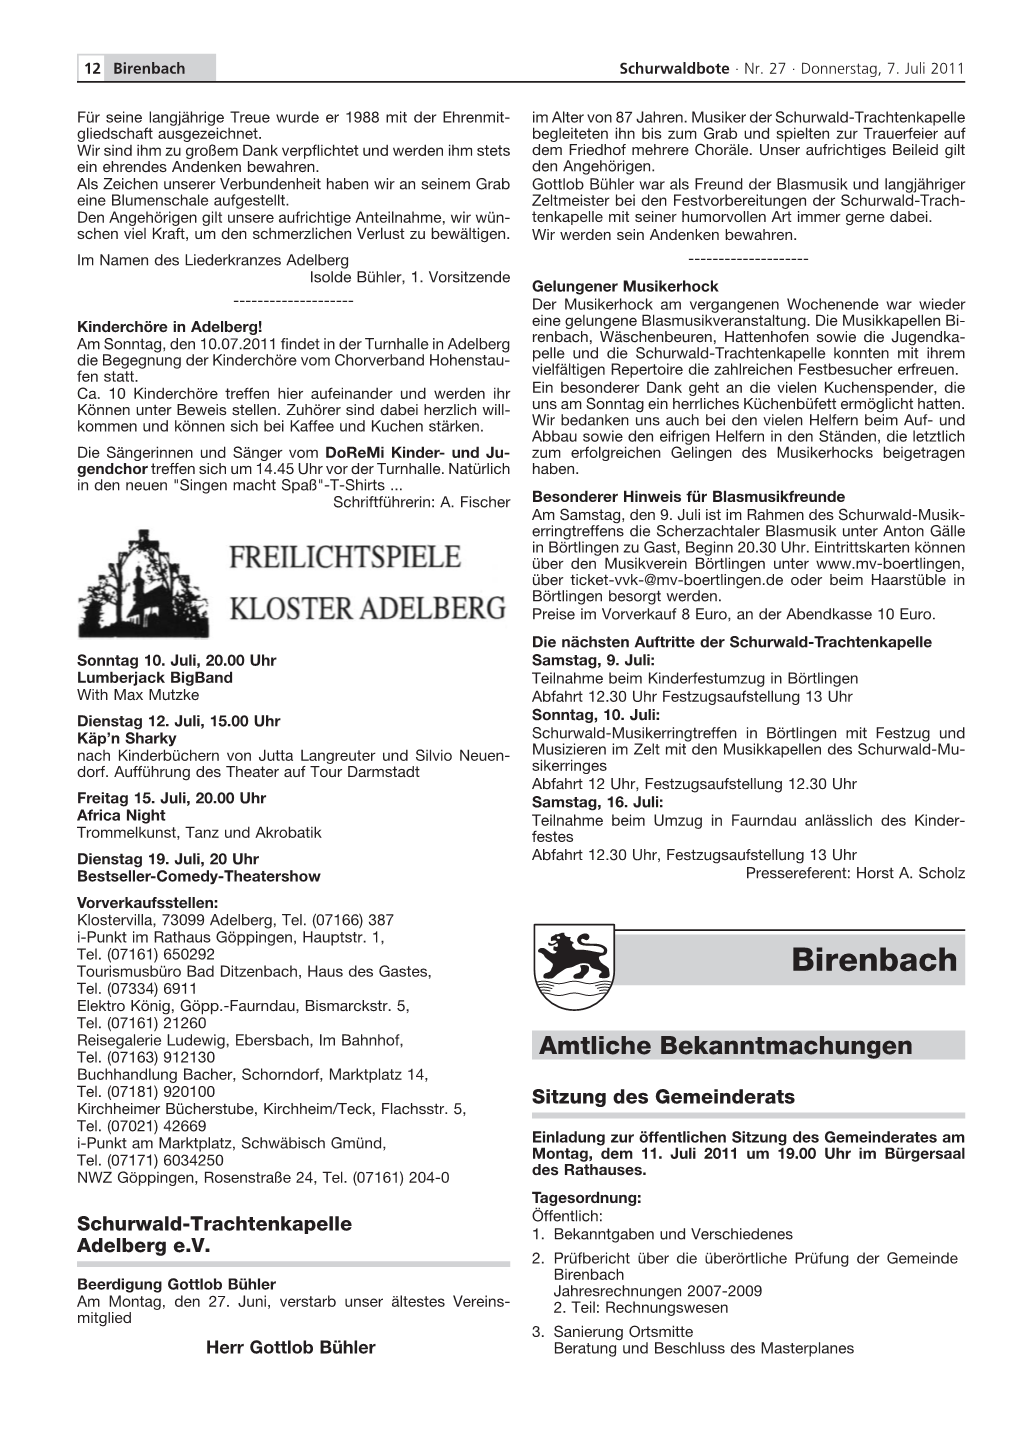 Gemeinde Birenbach Beerdigung Gottlob Bühler Jahresrechnungen 2007-2009 Am Montag, Den 27